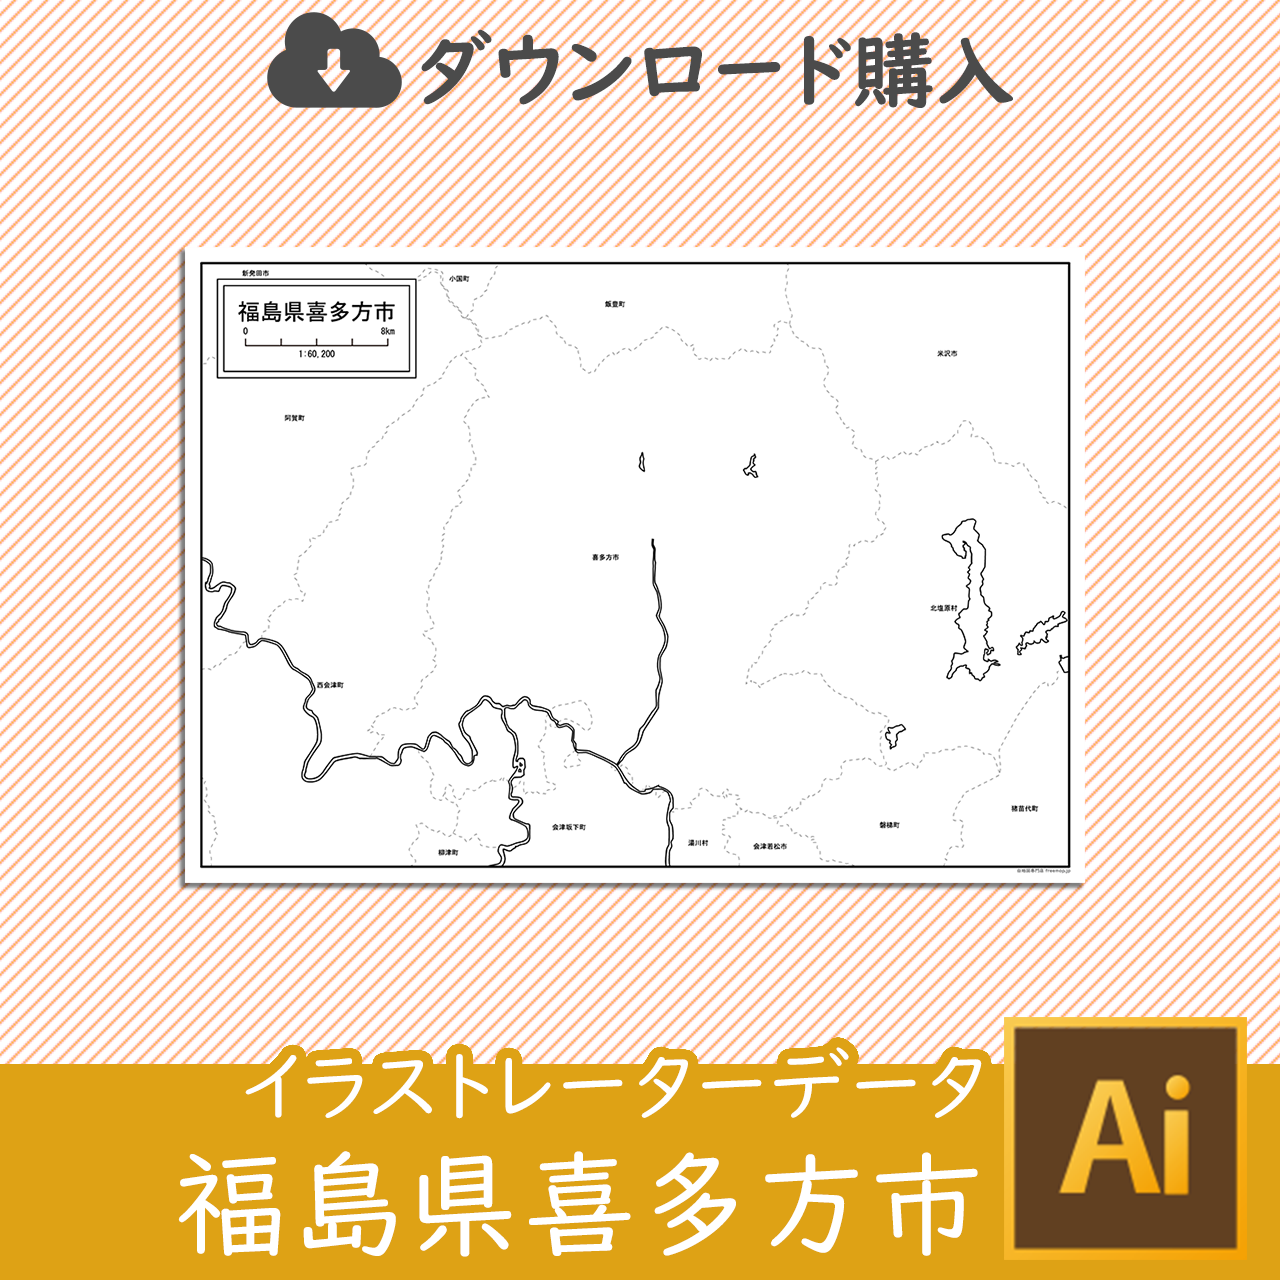 喜多方市のaiデータのサムネイル画像